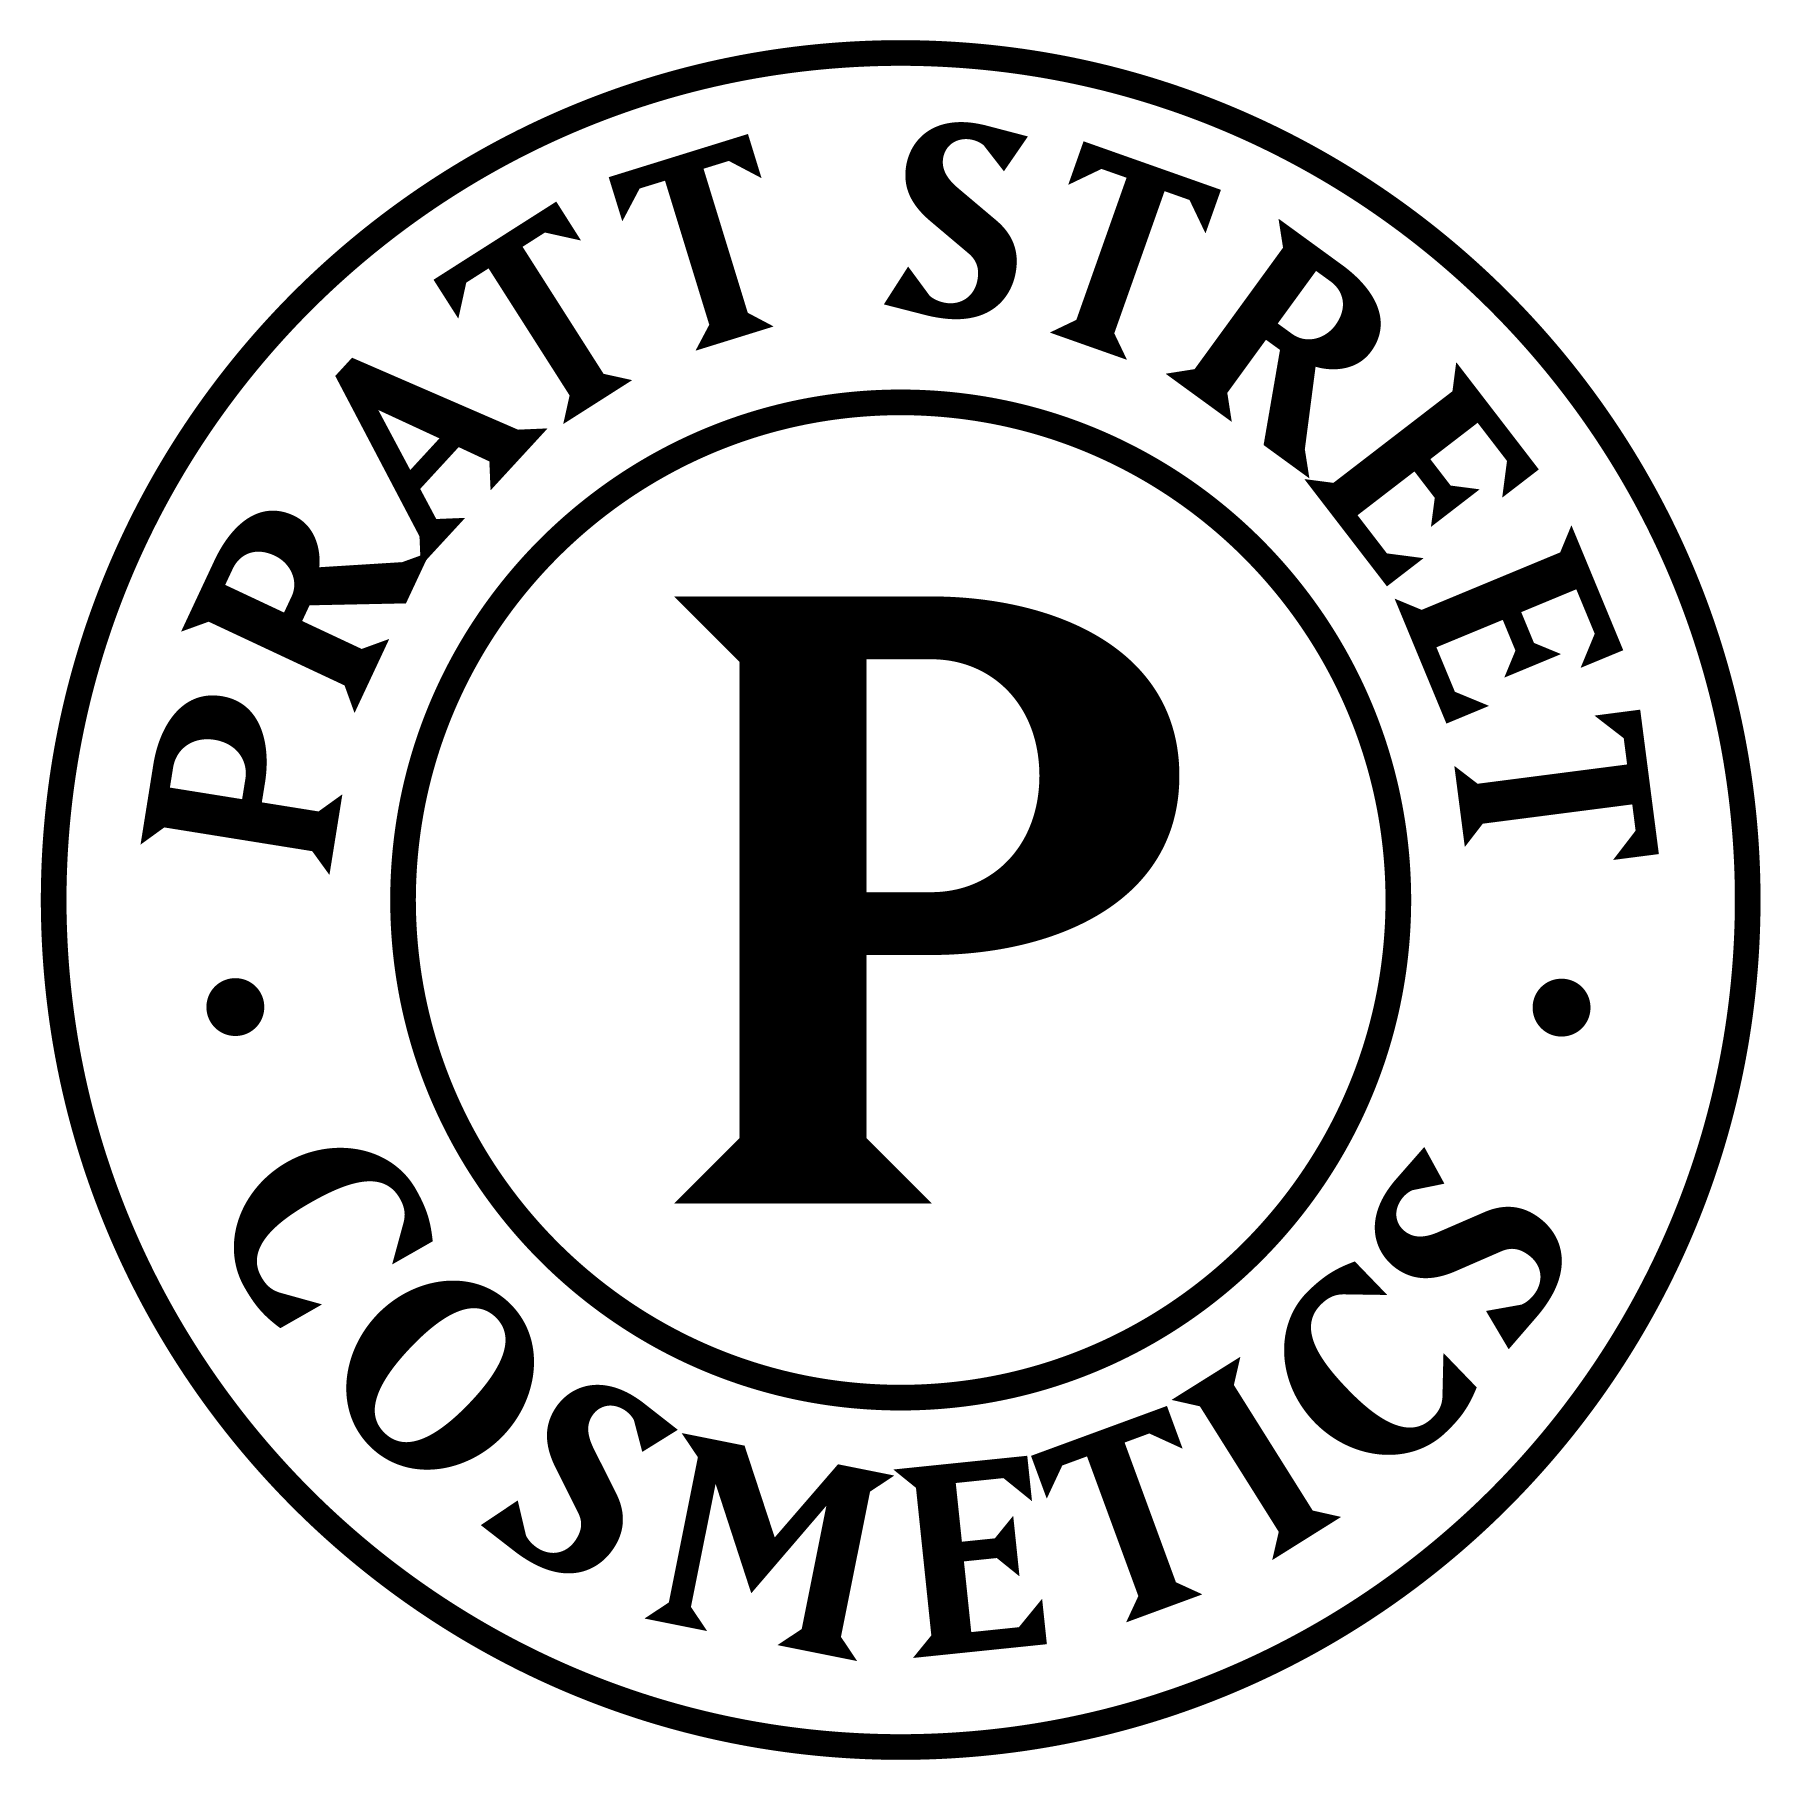 Rait Mickee Pictures logo (2011) by UnitedWorldMedia on DeviantArt